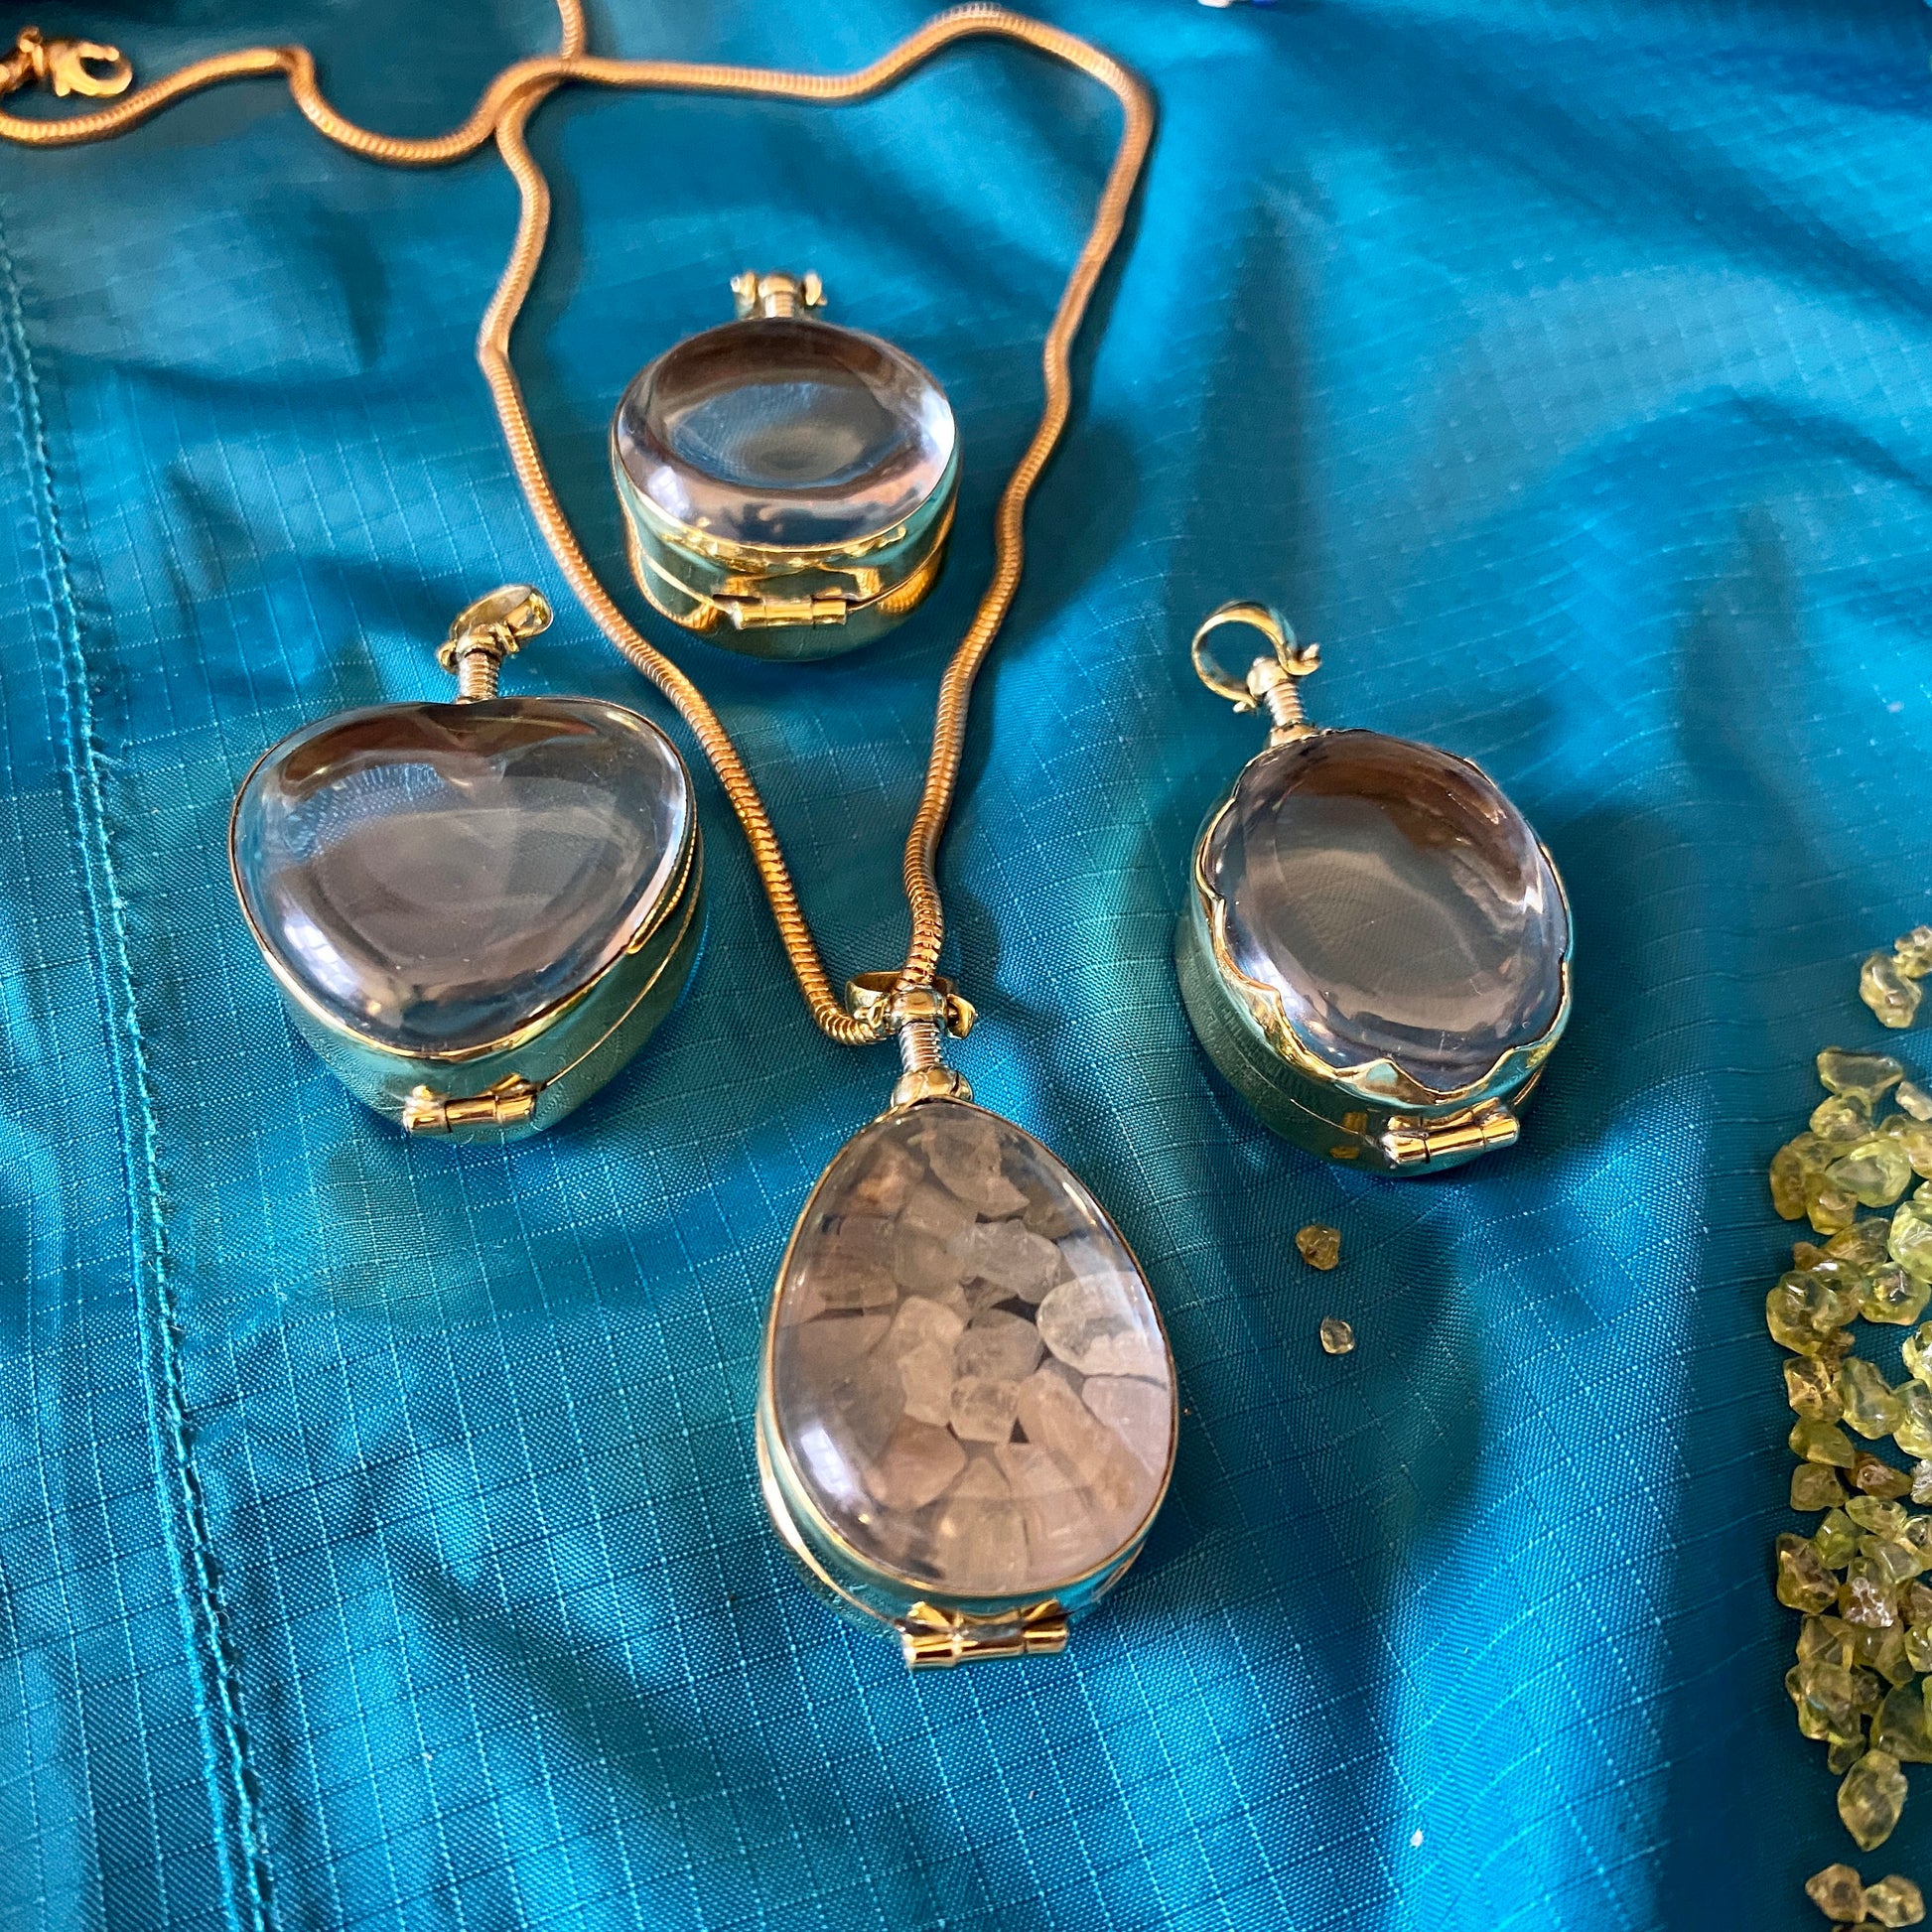 Personalised Locket for Gems, Birthstone Locket Necklace, Engraved Locket, Keepsake Memorial Jewelry Necklace, Beveled Glass Locket Necklace